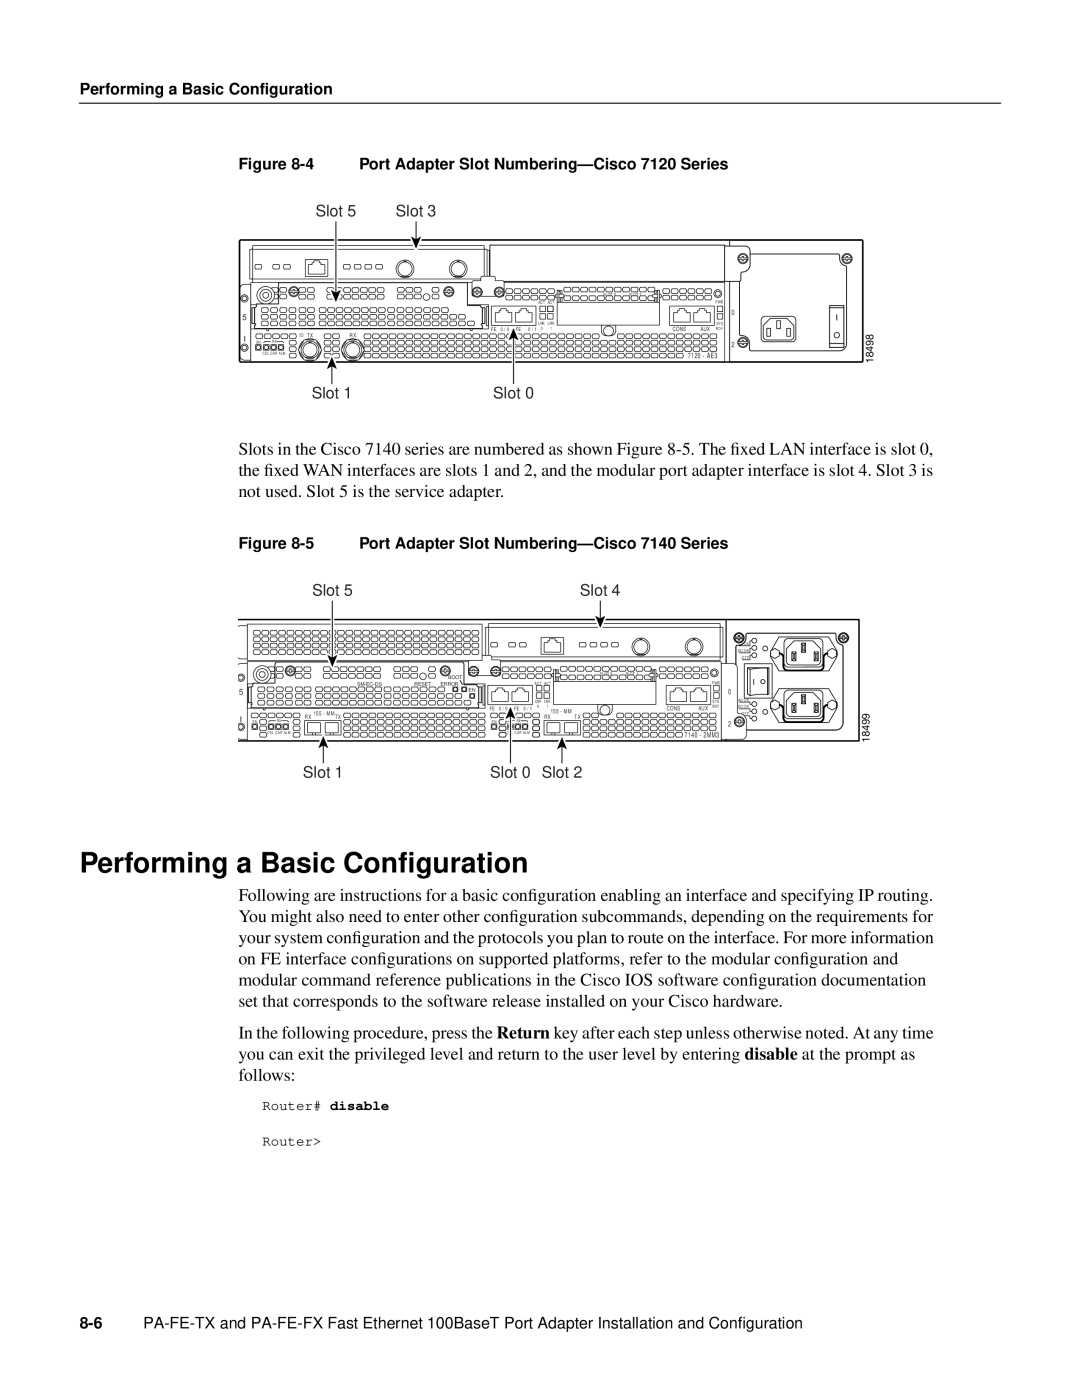 Cisco Systems PA-FE-TX, PA-FE-FX manual Performing a Basic Conﬁguration, Performing a Basic Configuration 